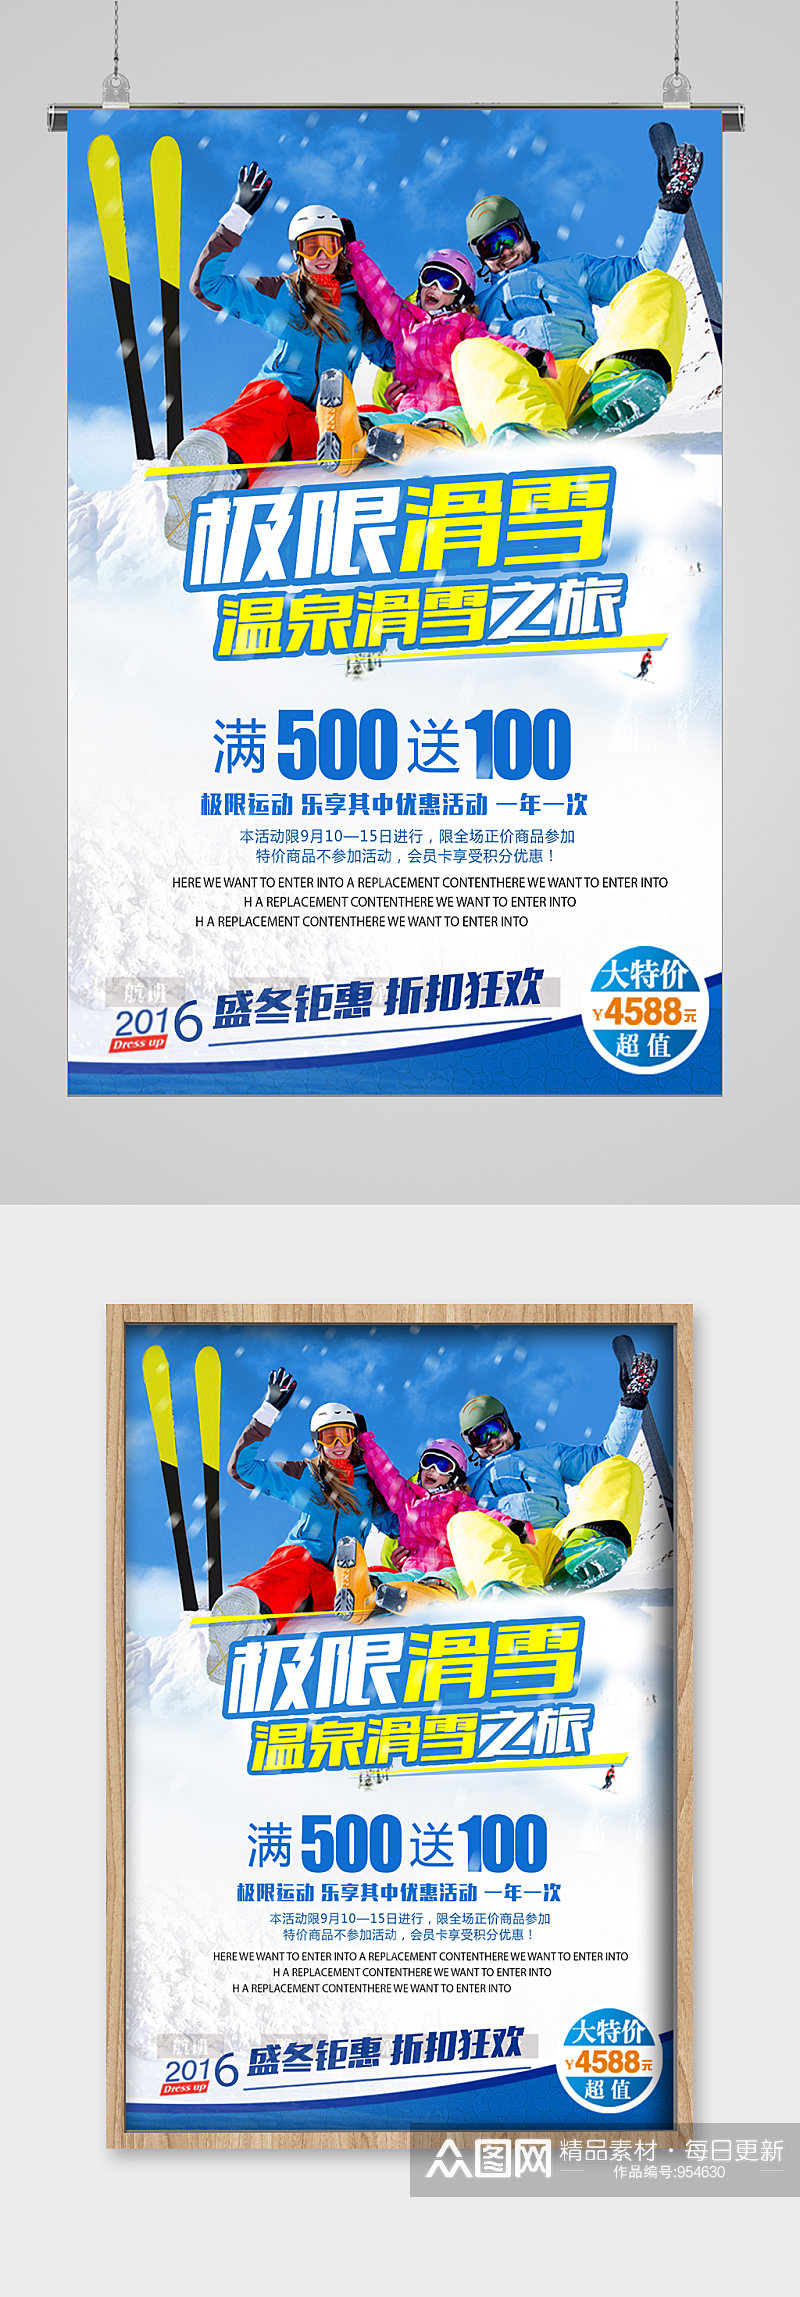 冬季滑雪满送宣传海报素材